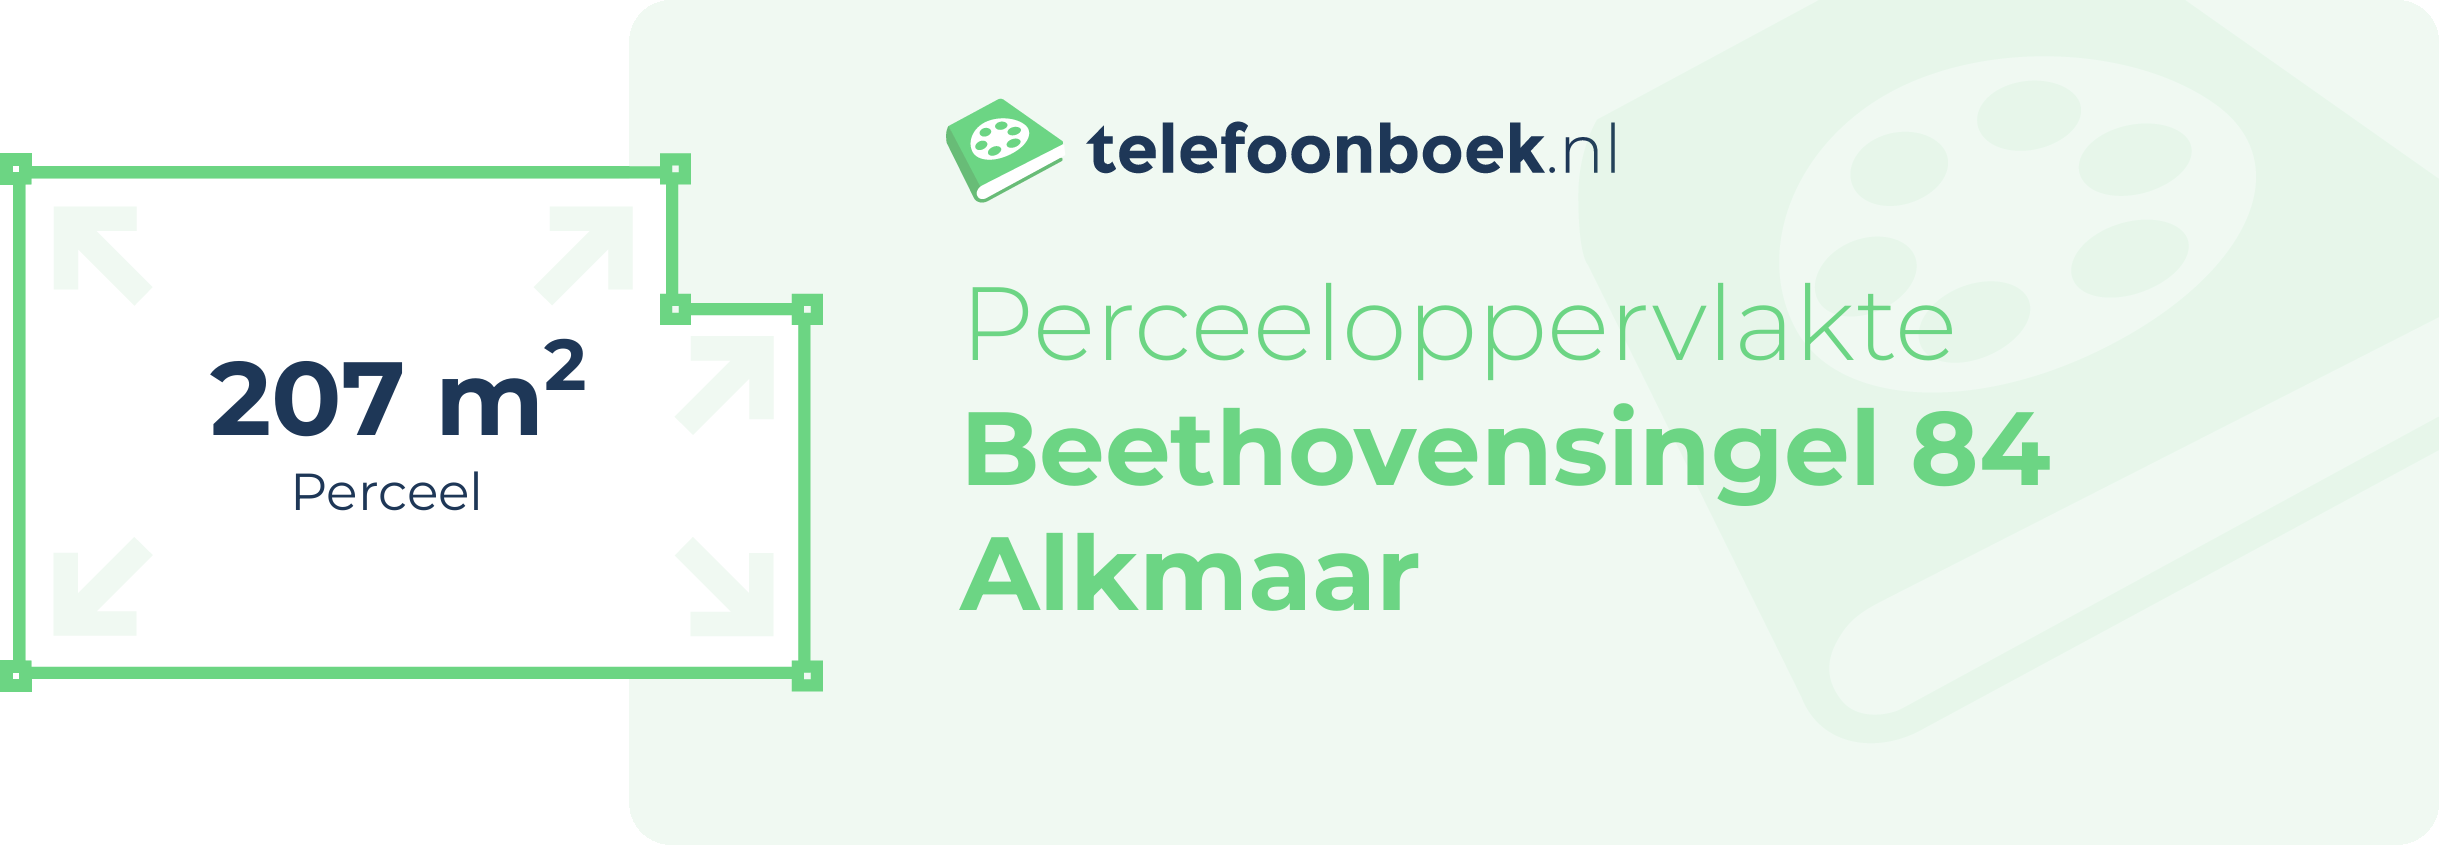 Perceeloppervlakte Beethovensingel 84 Alkmaar